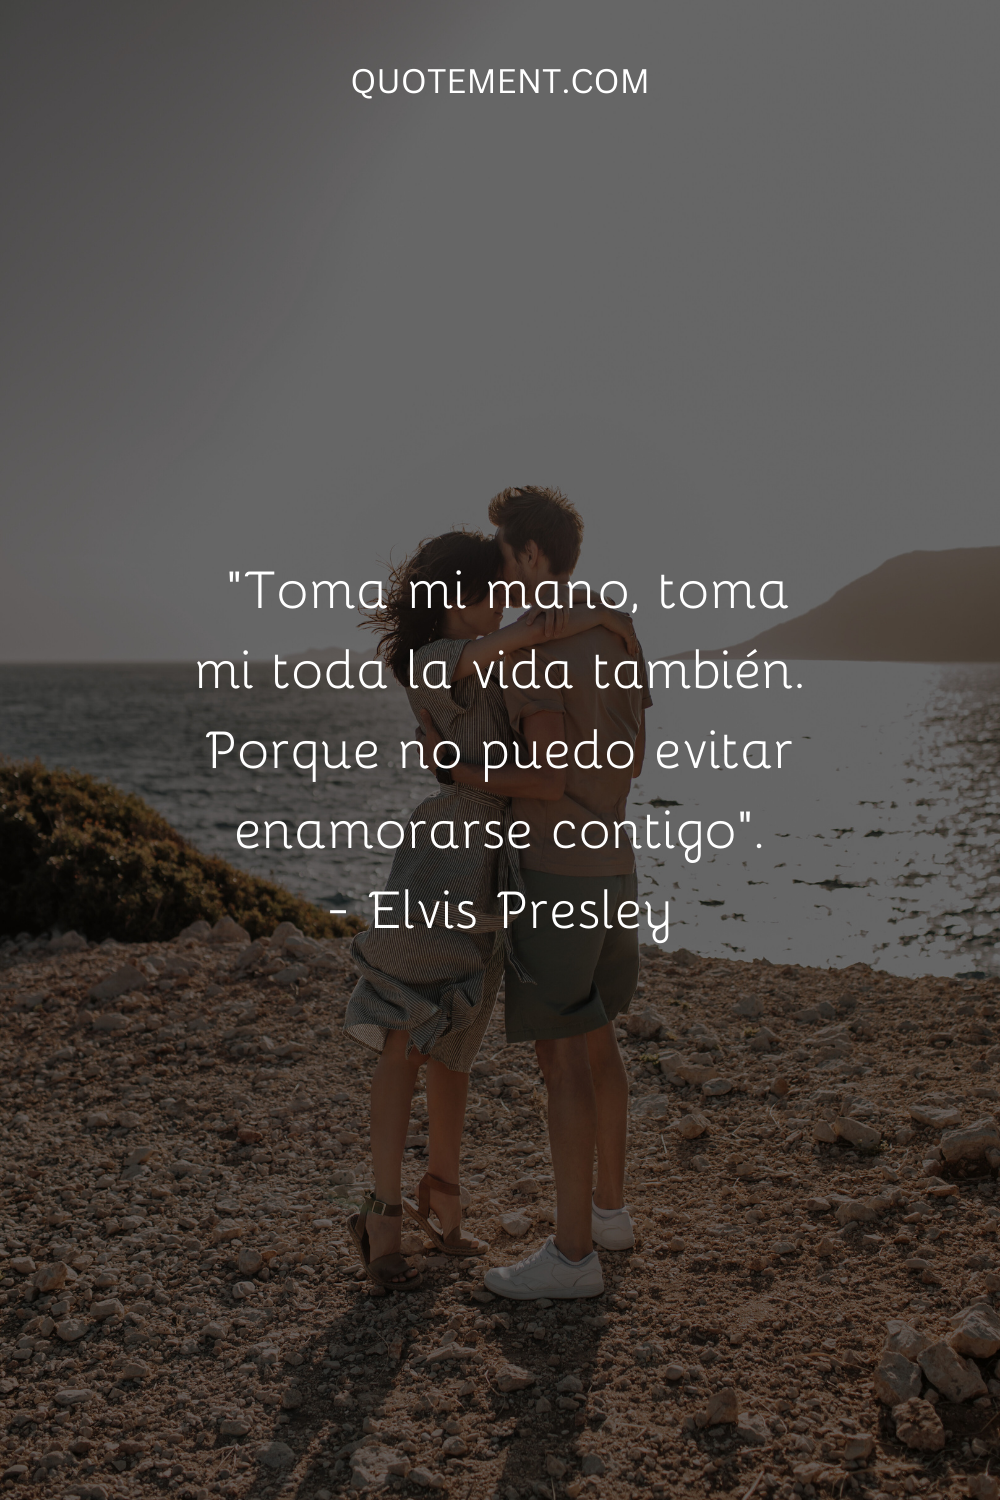 "Toma mi mano, toma toda mi vida también. Porque no puedo evitar enamorarme de ti". - Elvis Presley